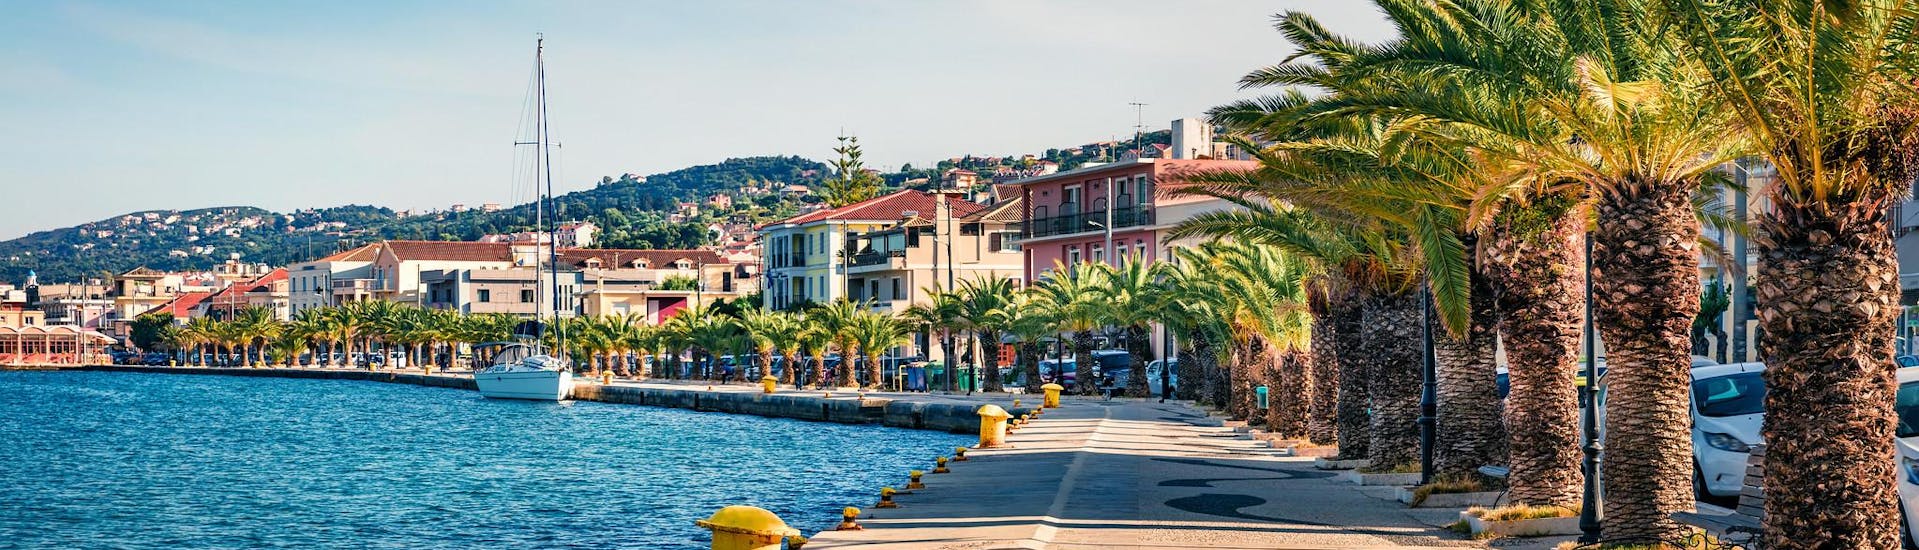 Blick auf den Hafen von Argostoli, einem wunderschönen Ausgangspunkt für Bootsausflüge auf der Insel Kefalonia, Griechenland.